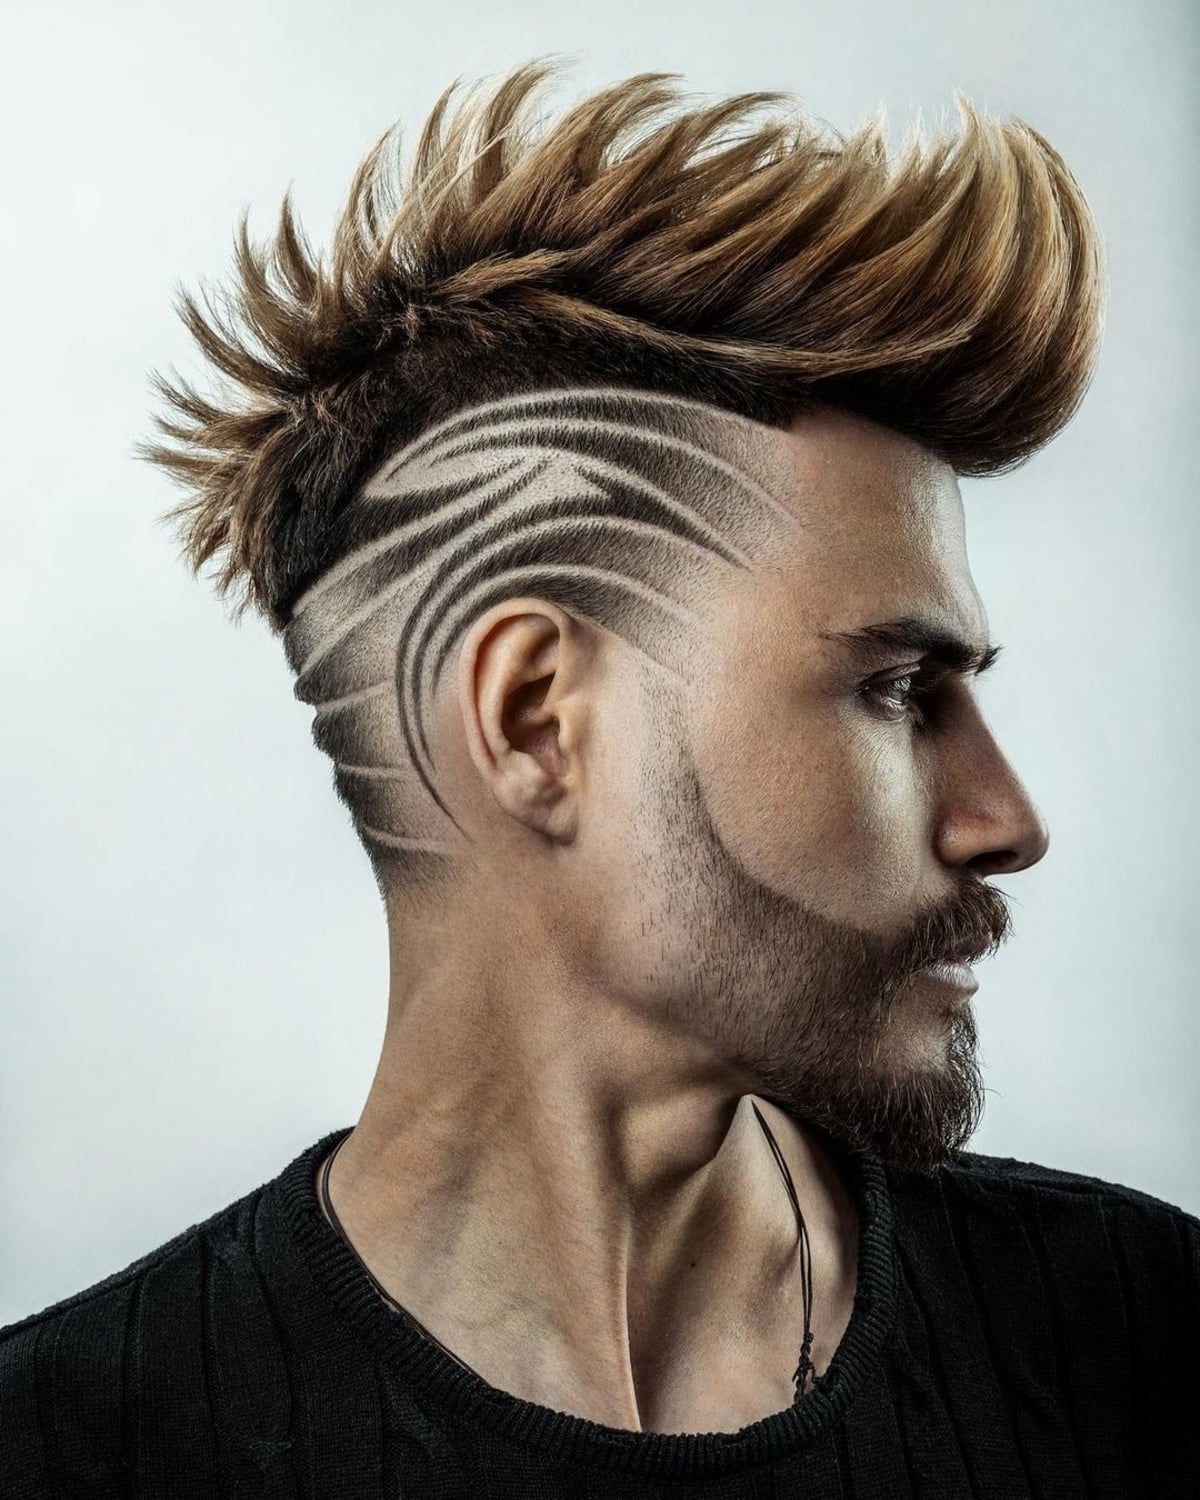 3D effect hair design for men